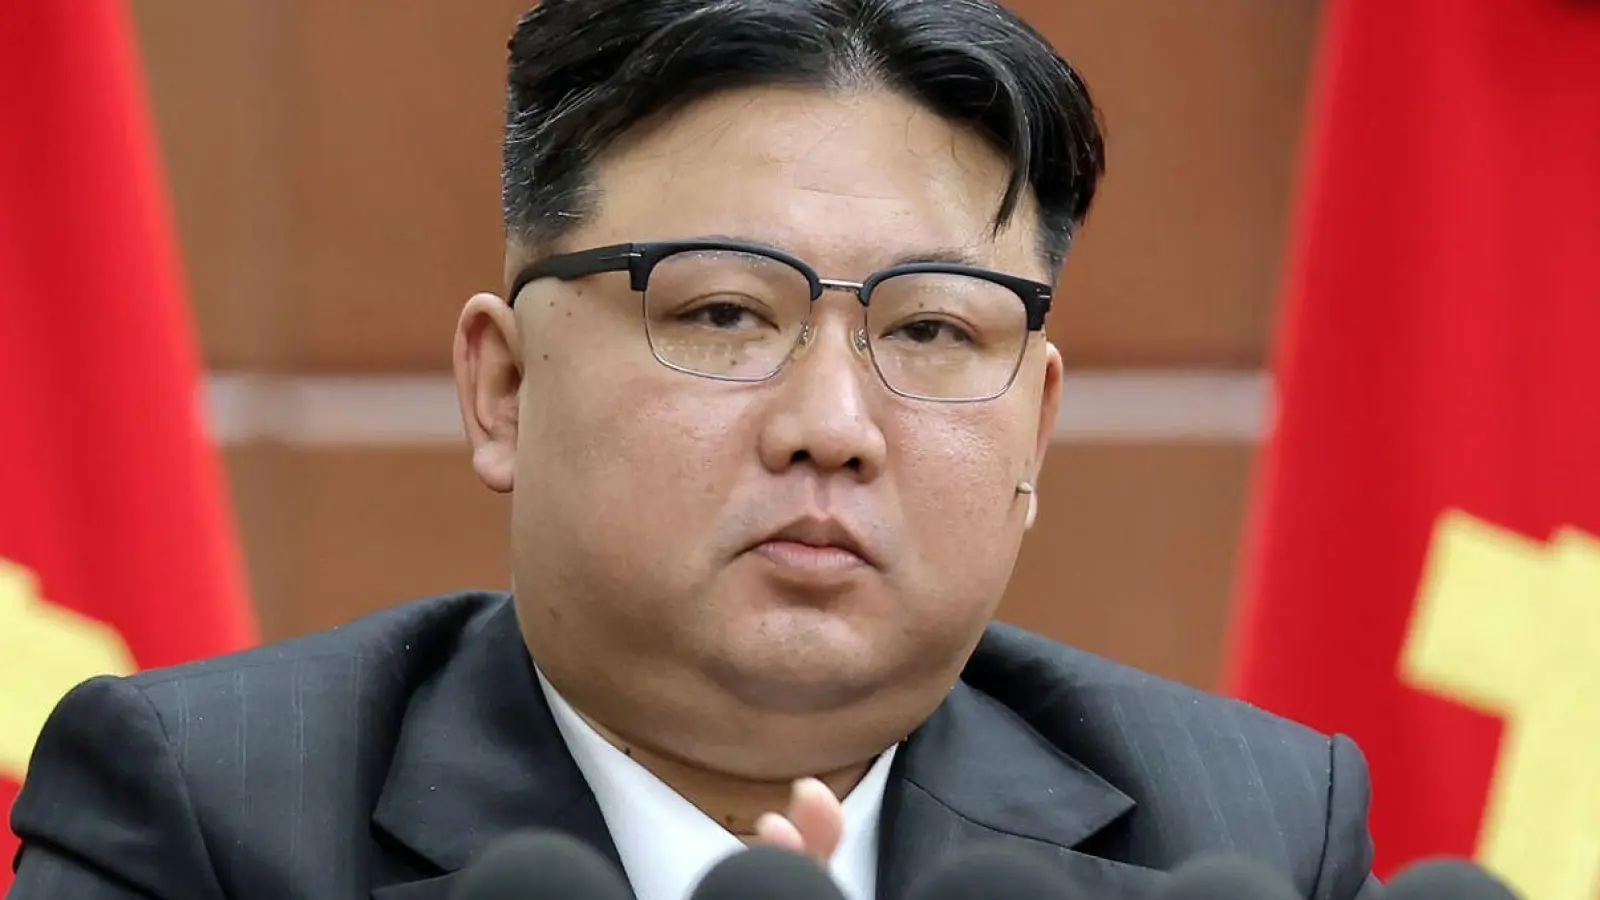 Machthaber Kim Jong Un will die militärische Macht Nordkoreas weiter ausbauen. (Foto: Uncredited/KCNA/KNS/dpa)